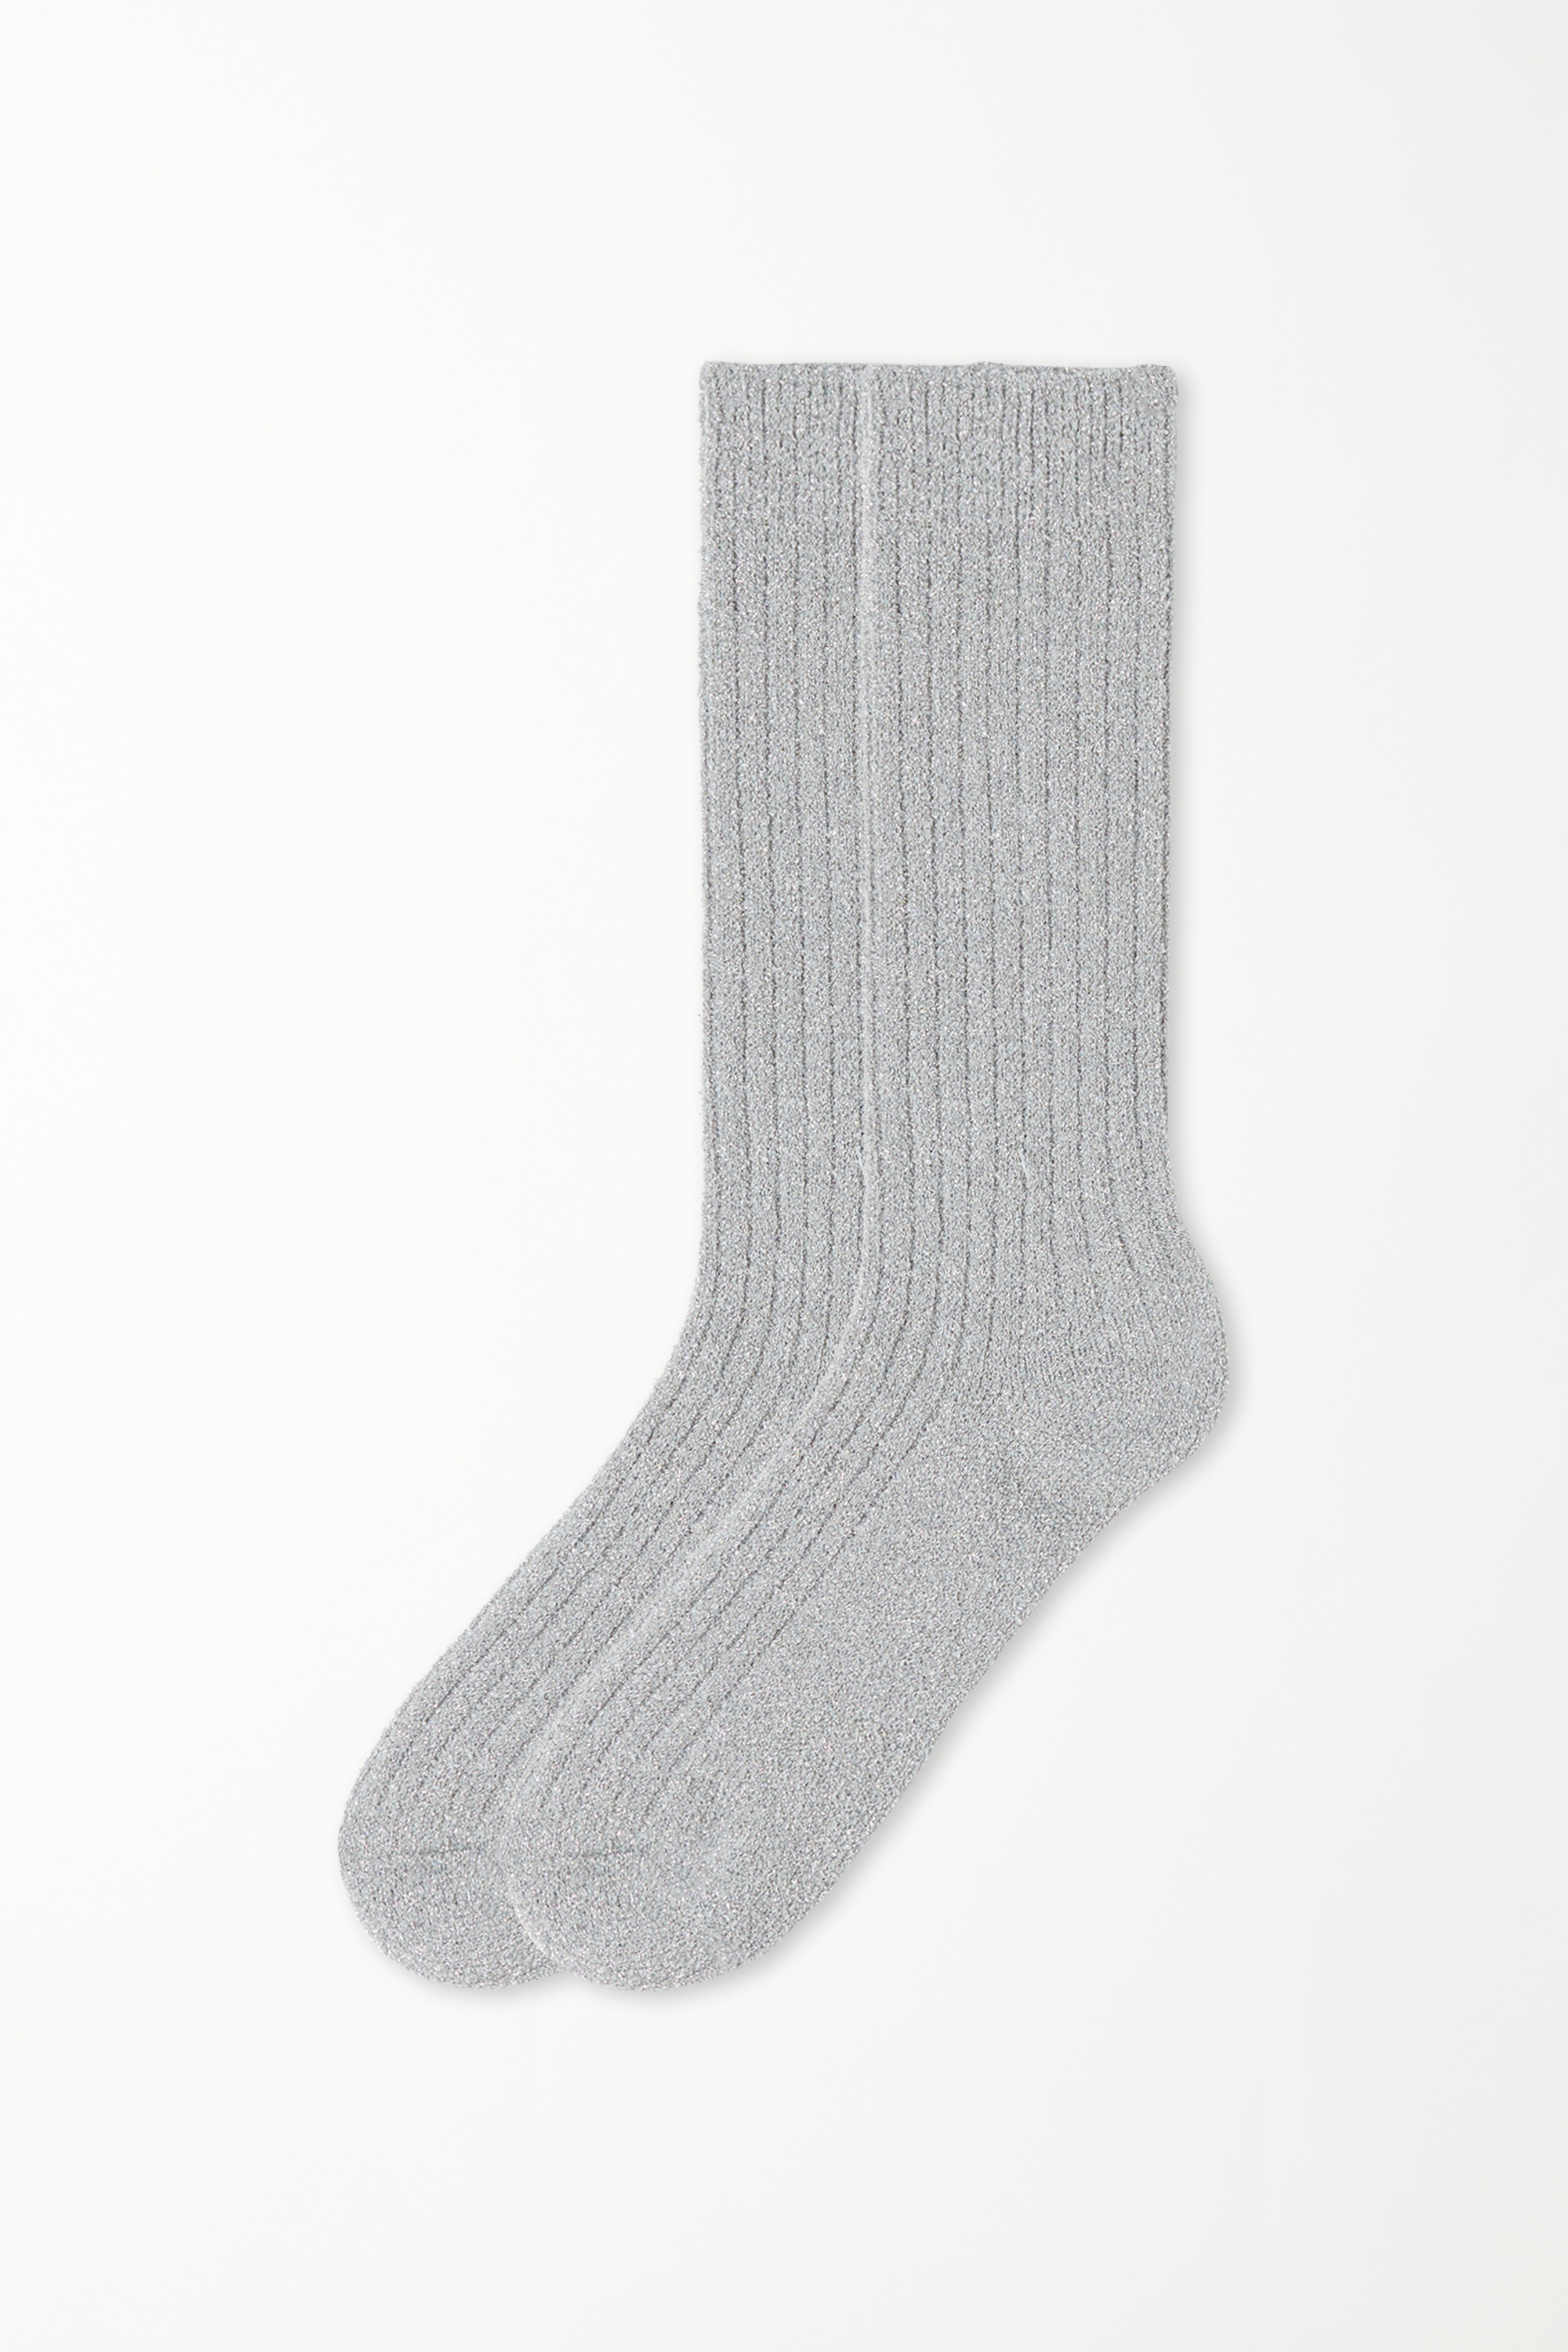 3/4 Length Thick Laminated Ribbed Socks